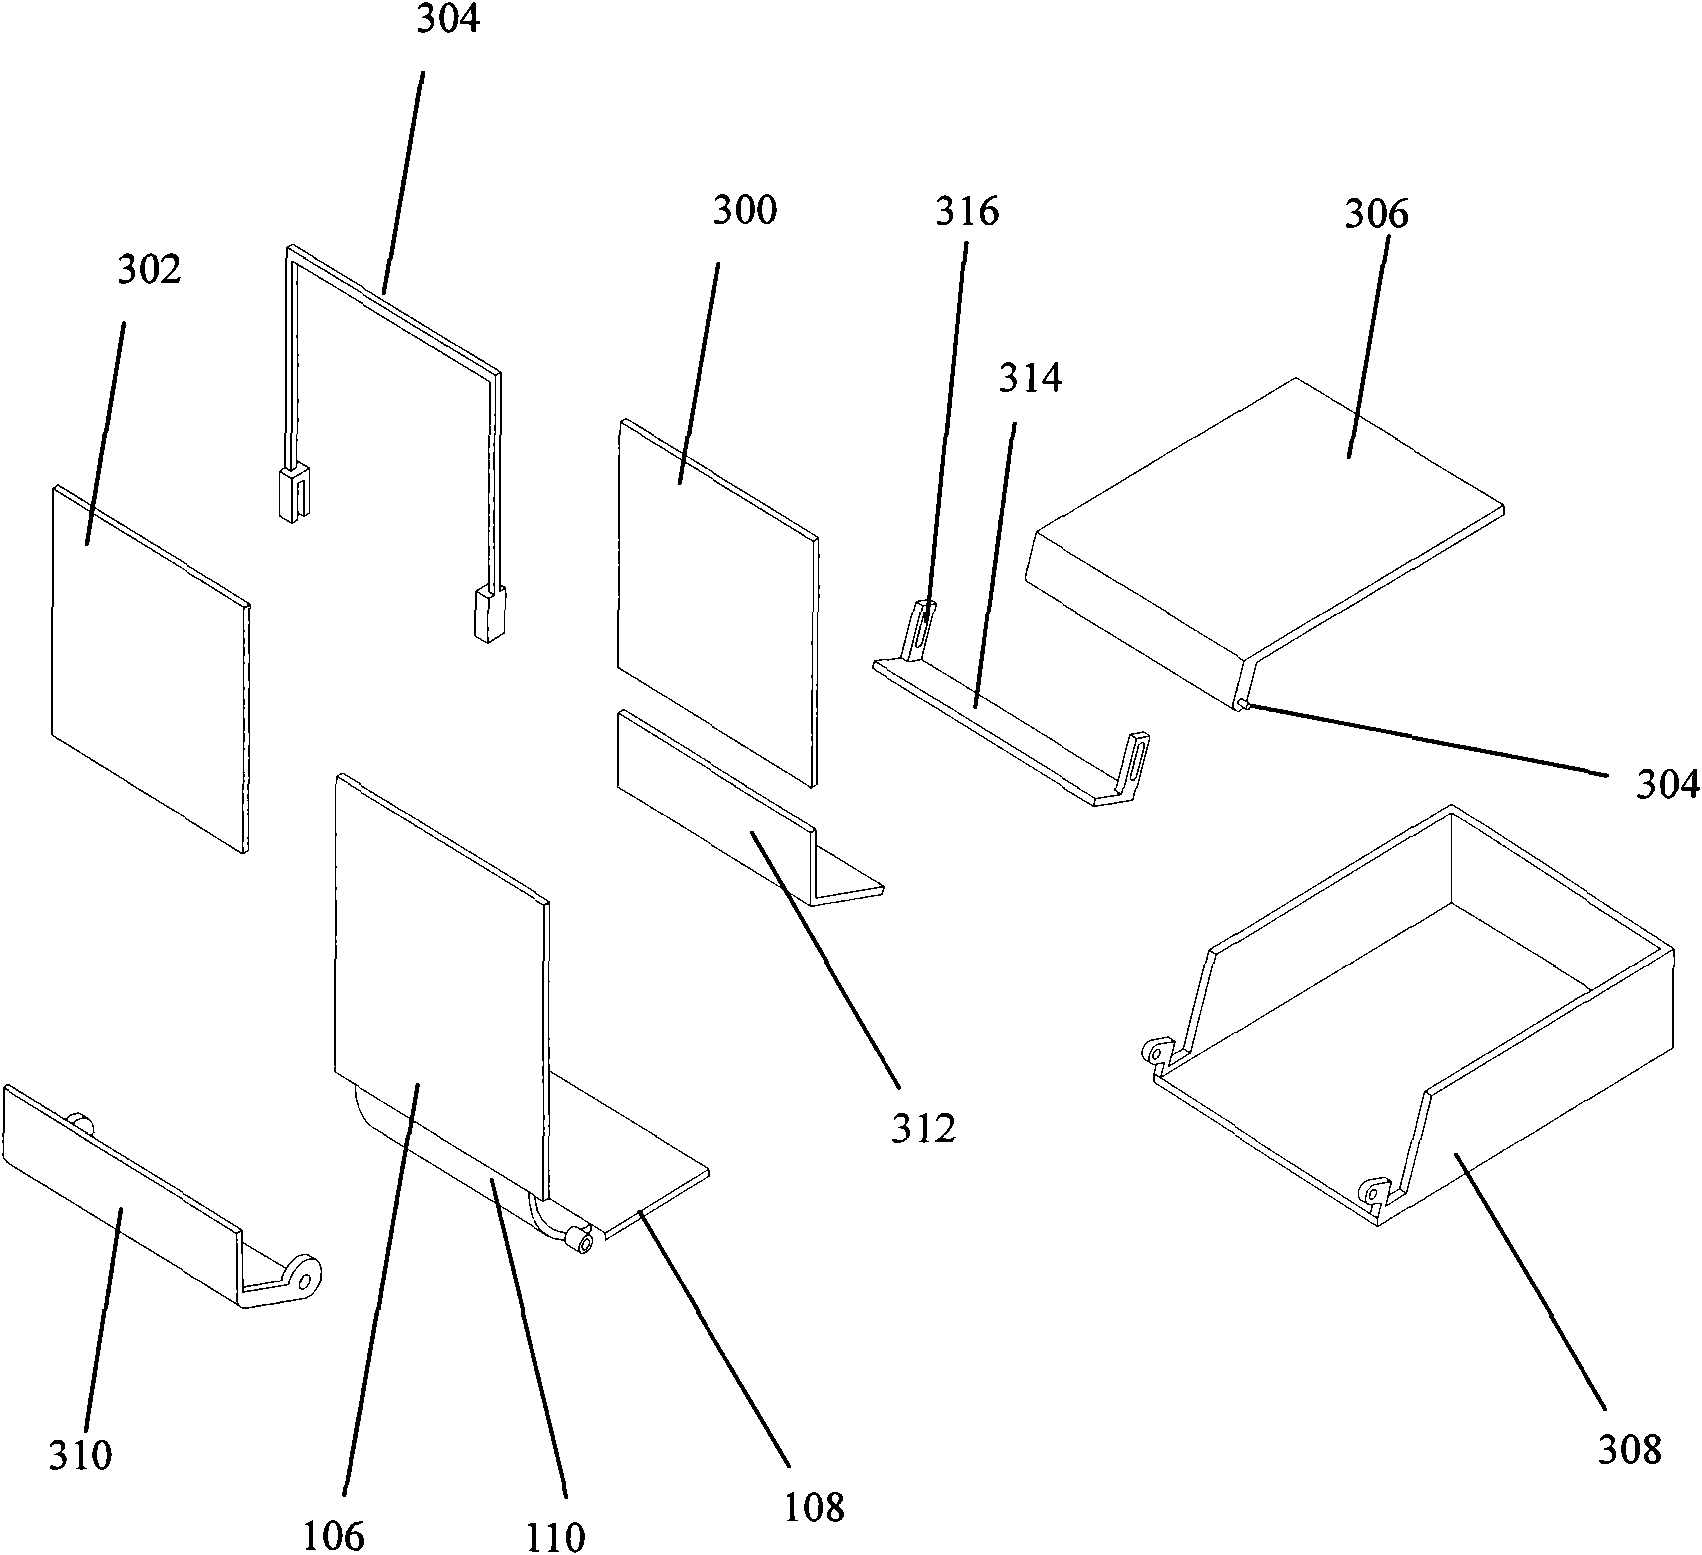 Laptop structure